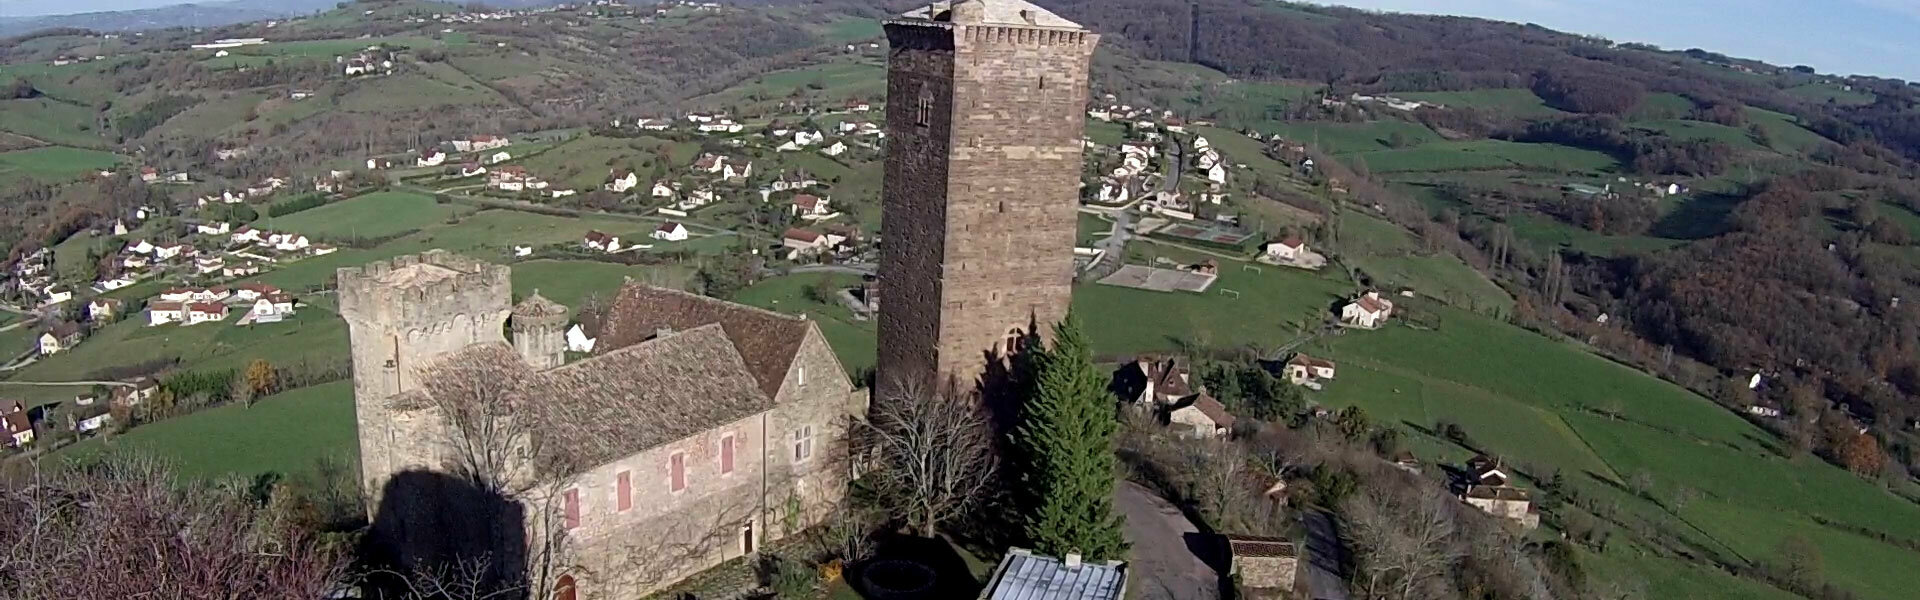 Mairie Commune Château Saint-Laurent-les-Tours Lot Vallée Dordogne